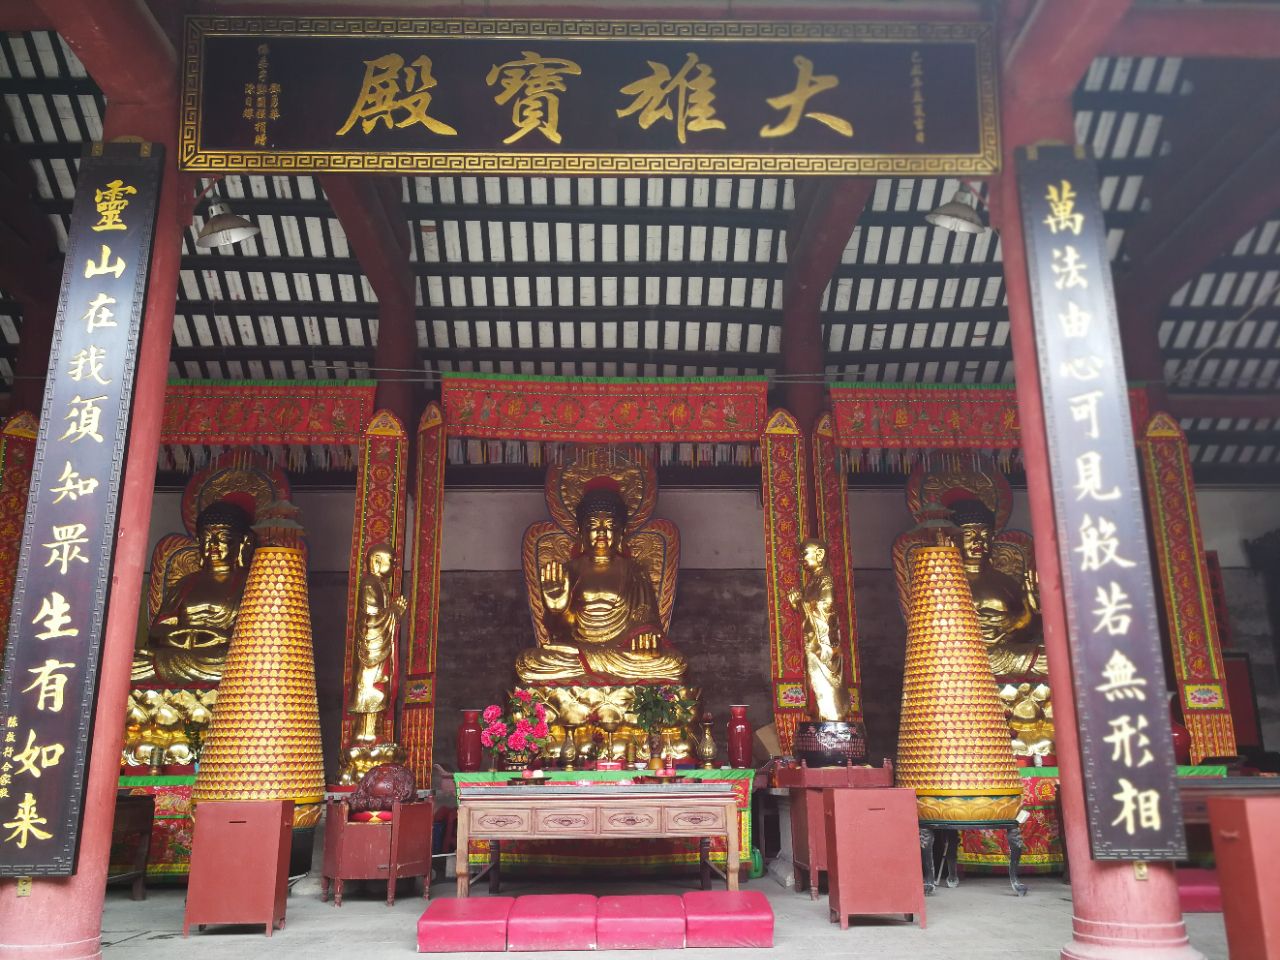 芦苞祖庙,俗称胥江祖庙,坐落于广东佛山市三水区芦苞镇北郊华山之麓.